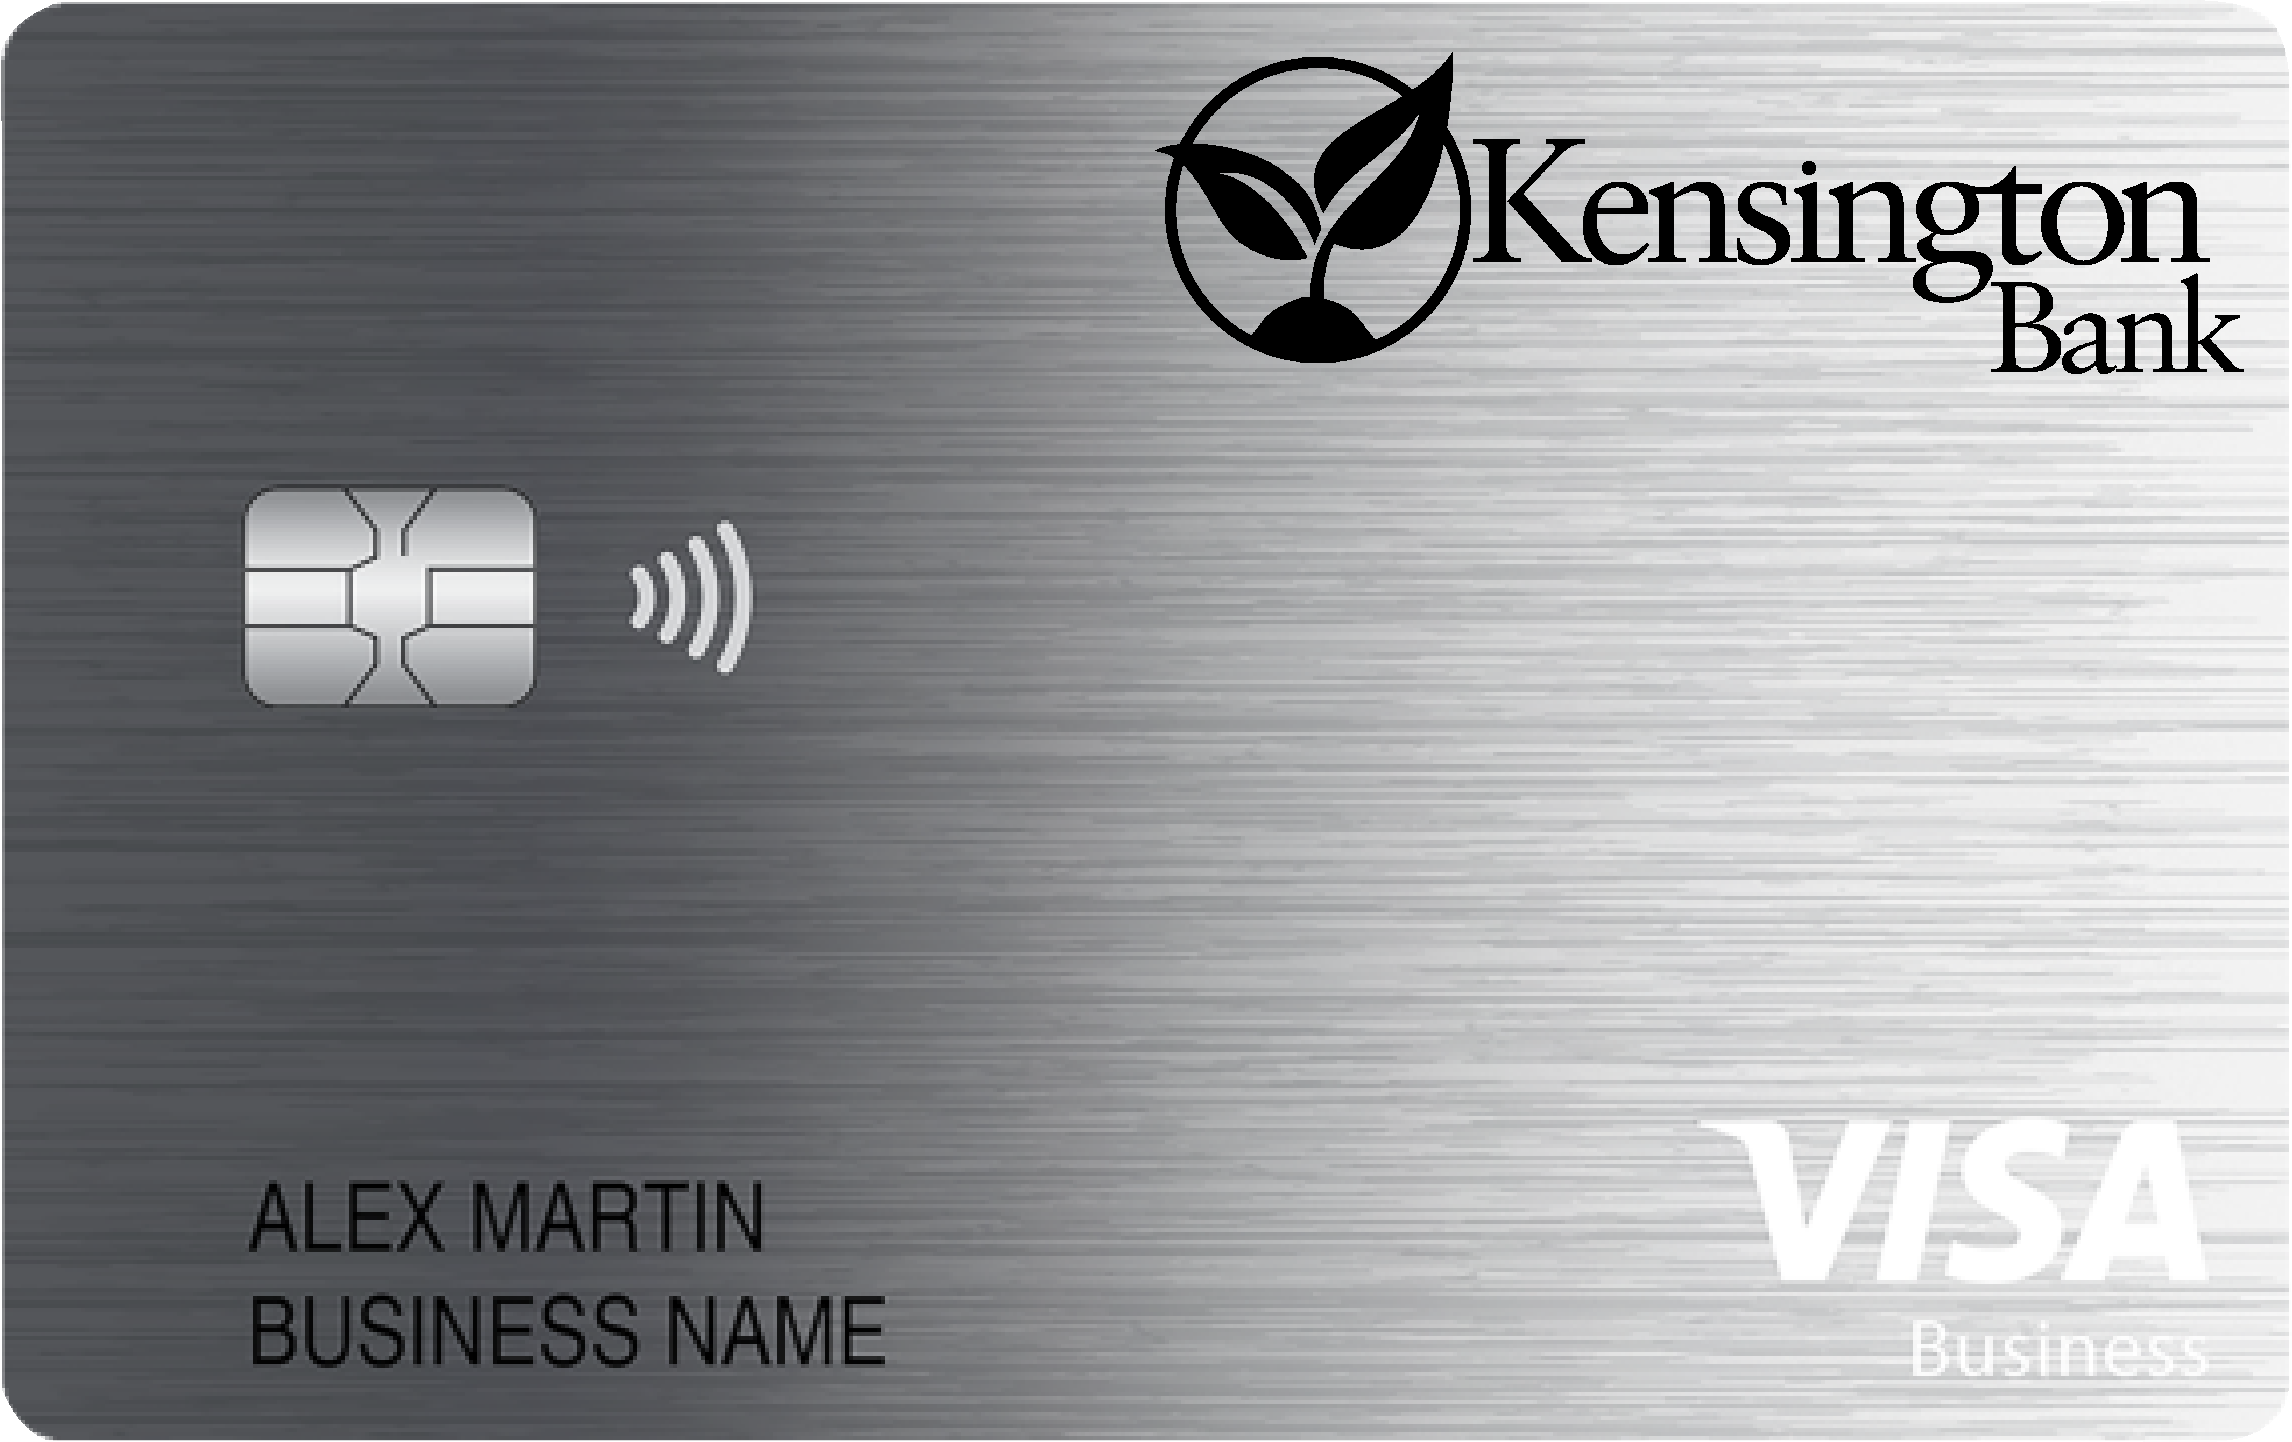 Kensington Bank Business Card Card